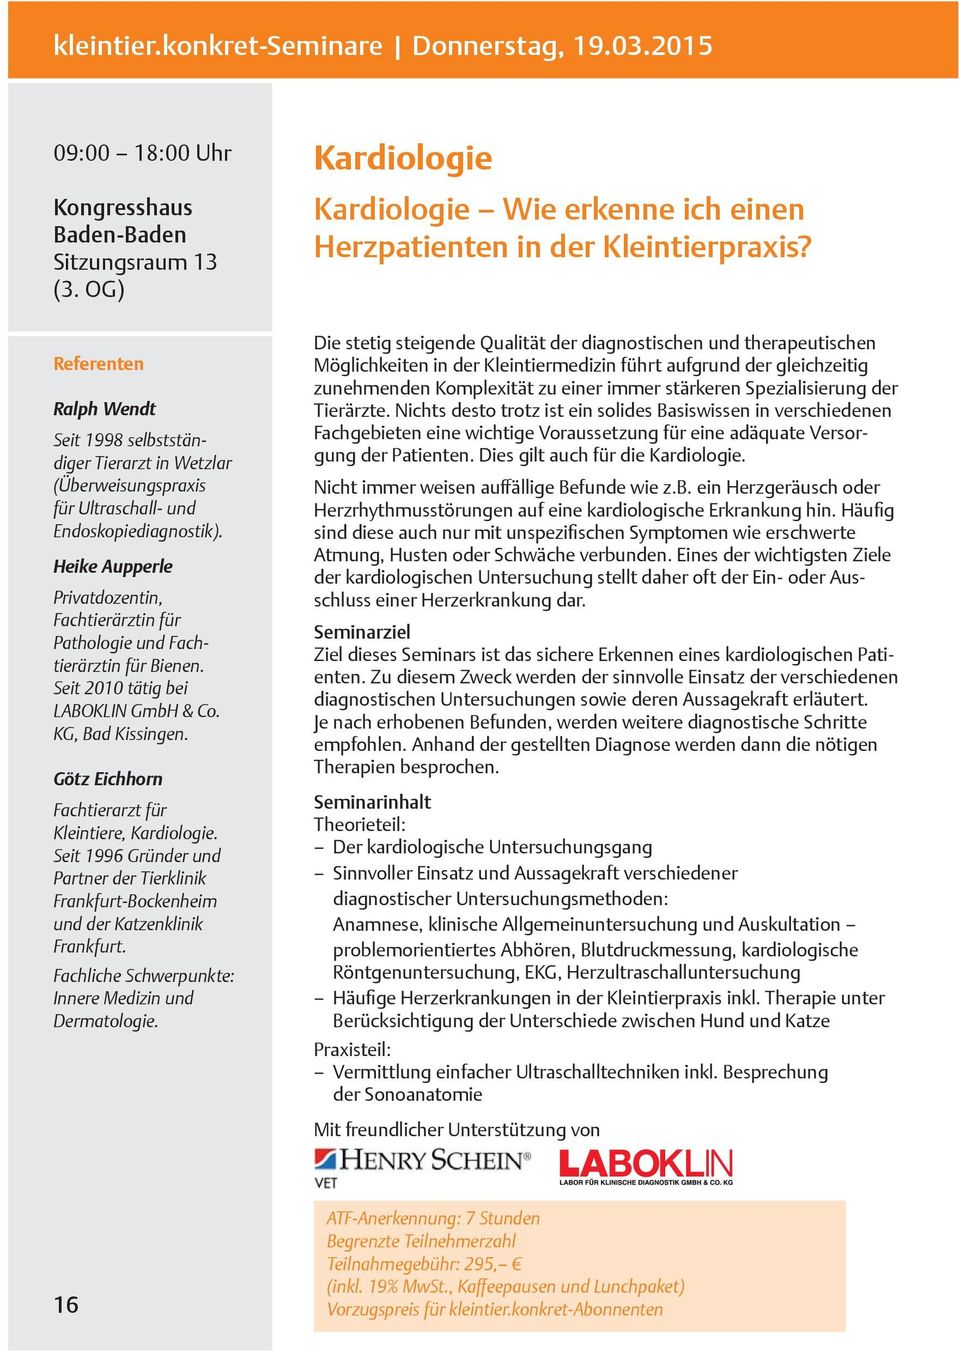 Heike Aupperle Privatdozentin, Fachtierärztin für Pathologie und Fachtierärztin für Bienen. Seit 2010 tätig bei LABOKLIN GmbH & Co. KG, Bad Kissingen.